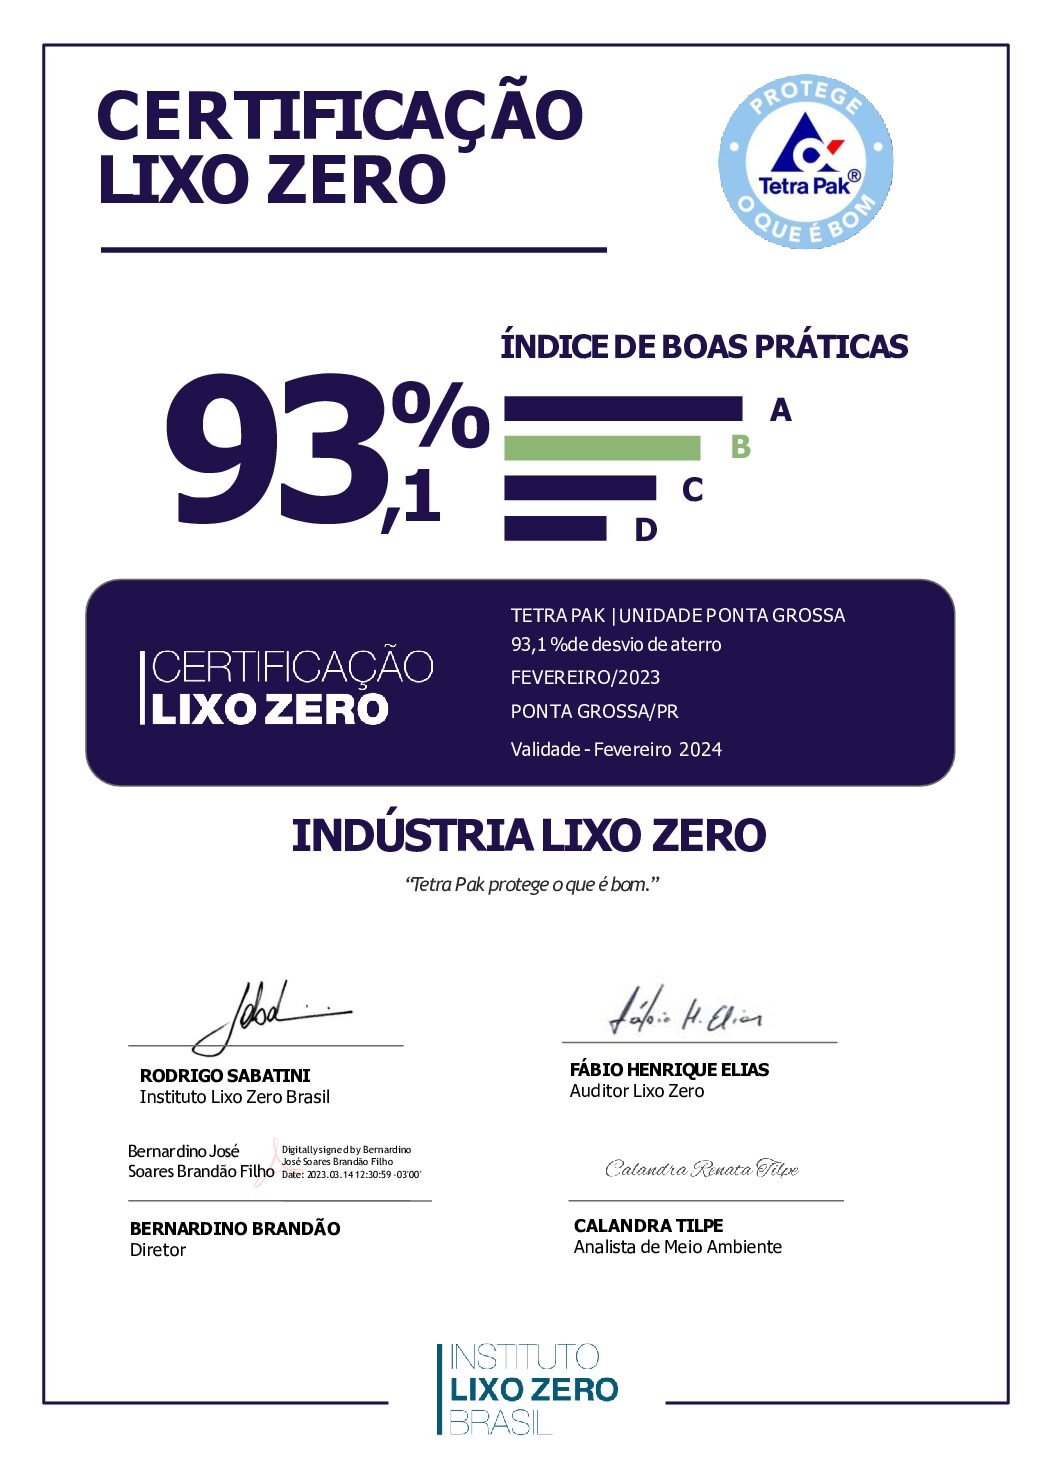 Certificação_LixoZero_TetraPak_PontaGrossa_PR